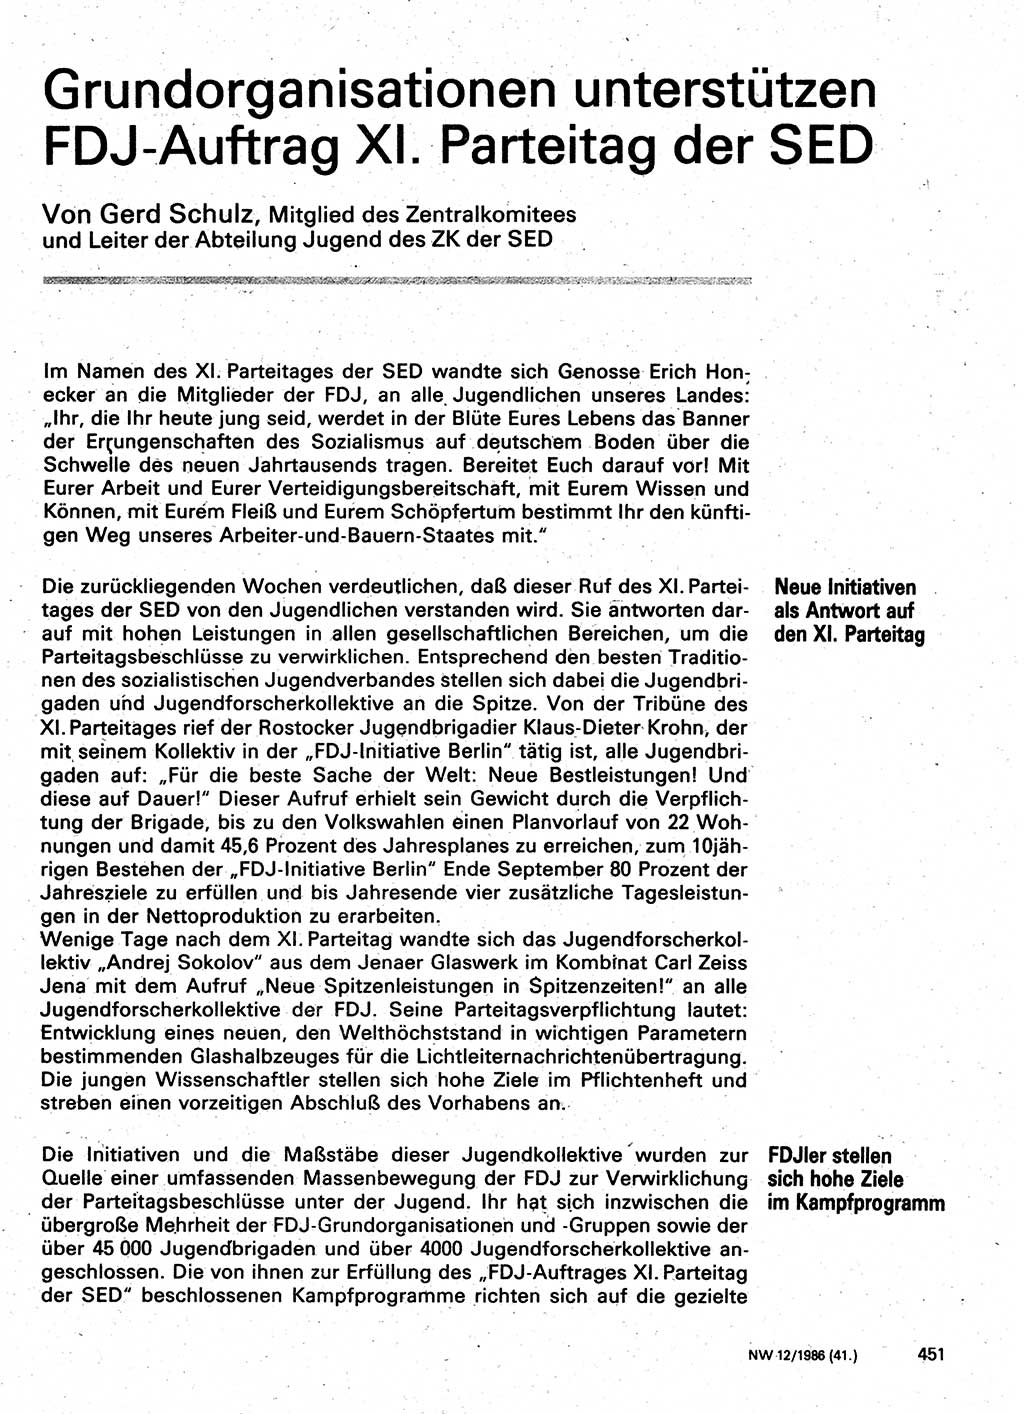 Neuer Weg (NW), Organ des Zentralkomitees (ZK) der SED (Sozialistische Einheitspartei Deutschlands) für Fragen des Parteilebens, 41. Jahrgang [Deutsche Demokratische Republik (DDR)] 1986, Seite 451 (NW ZK SED DDR 1986, S. 451)